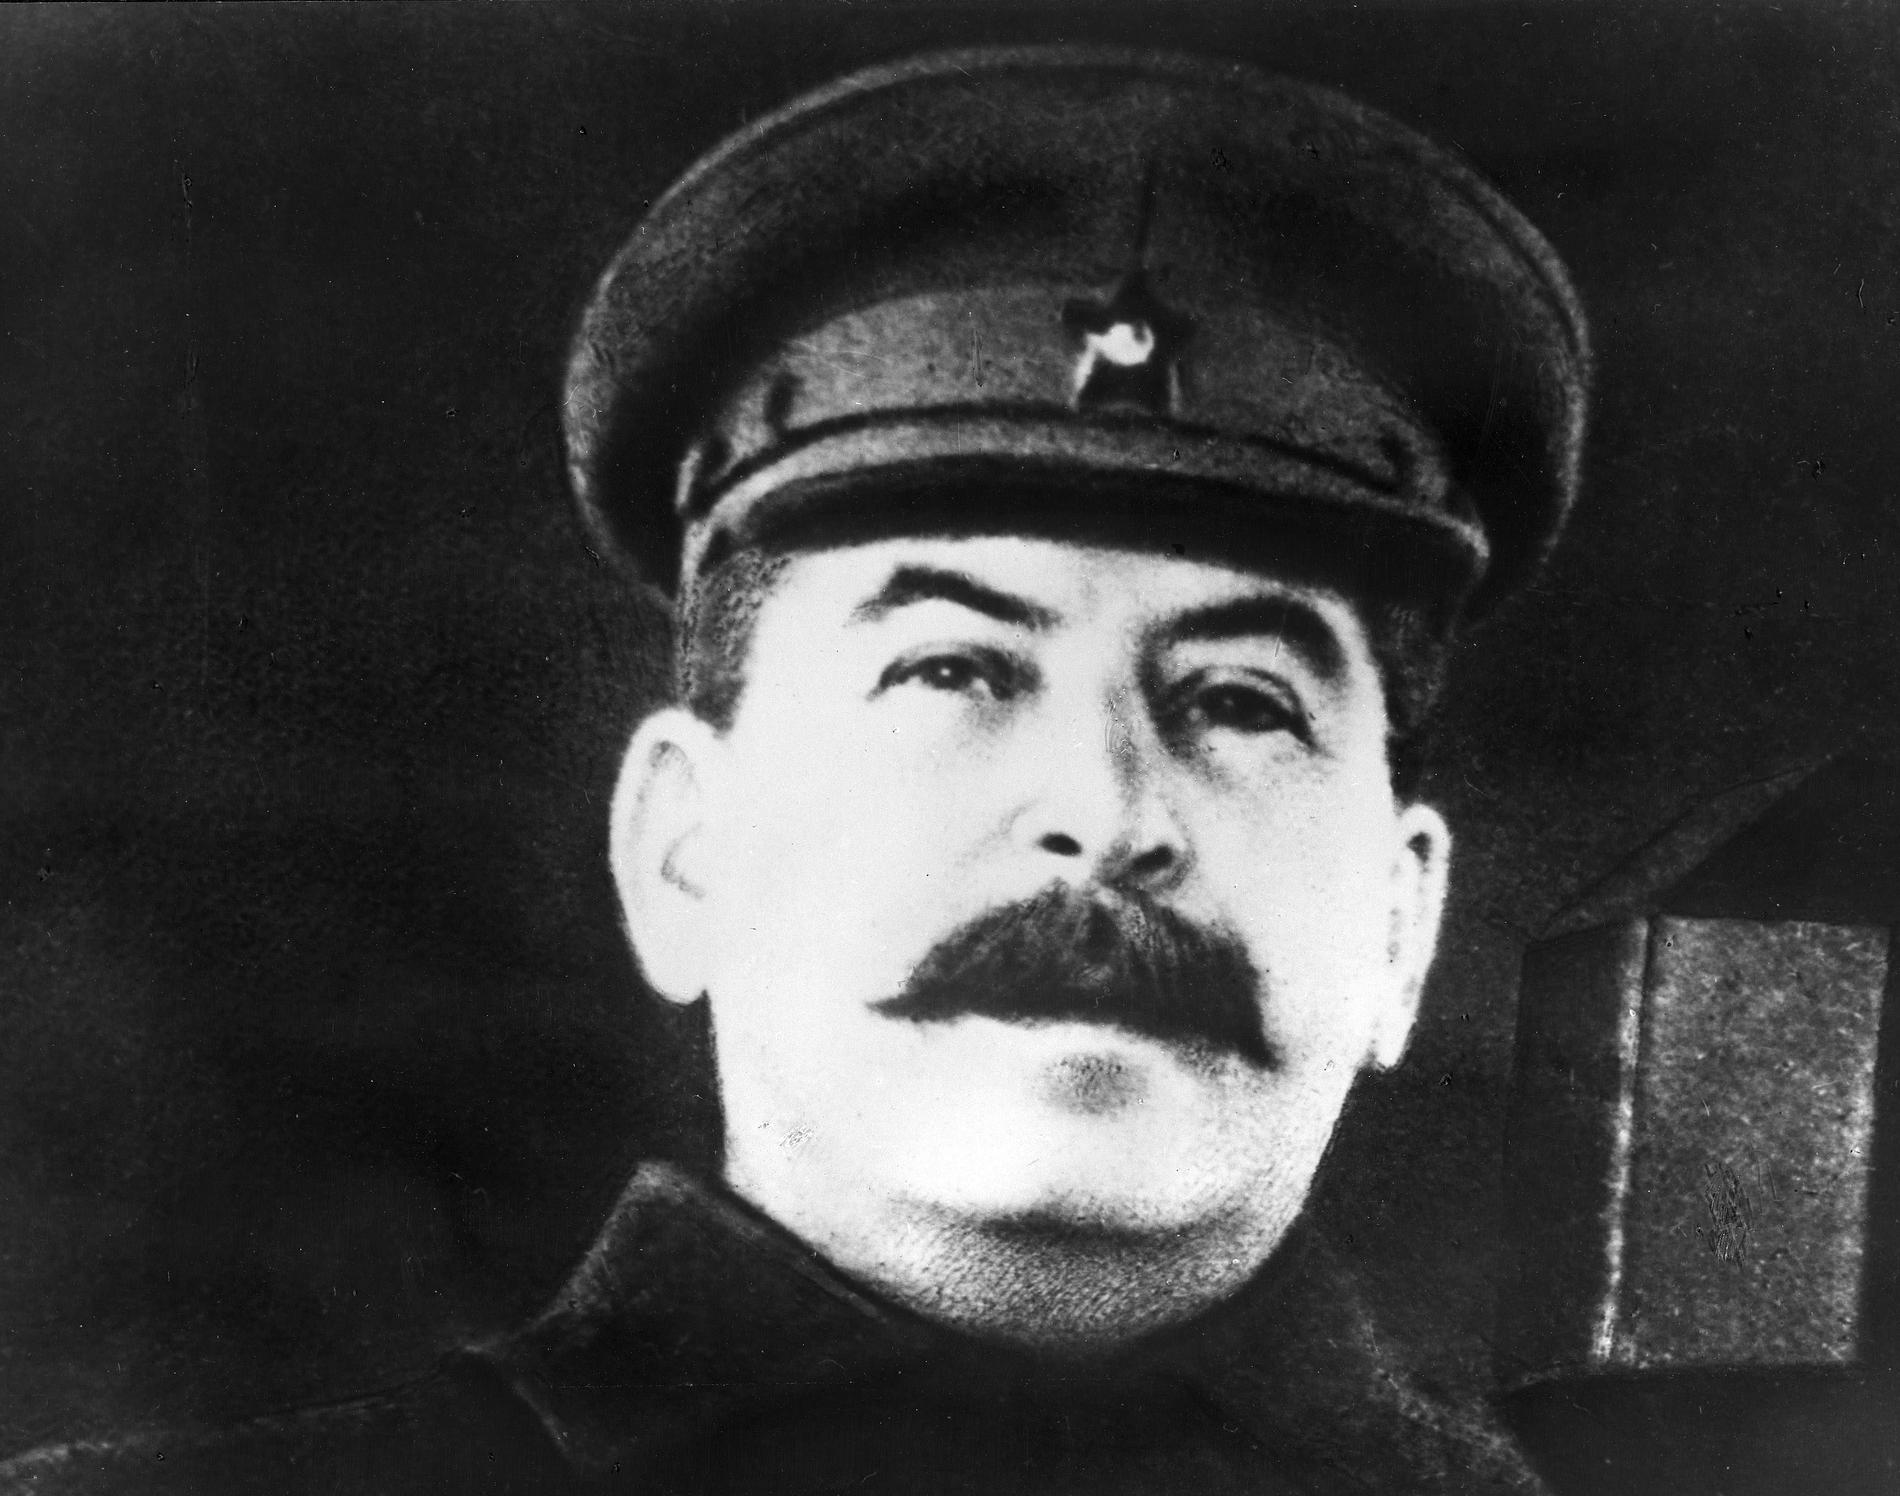 Odaterad arkivbild på Josef Stalin, diktator, när han talar i mikrofon under andra världskriget, eller som det hette i Sovjetunionen: Stora Fosterländska Kriget.